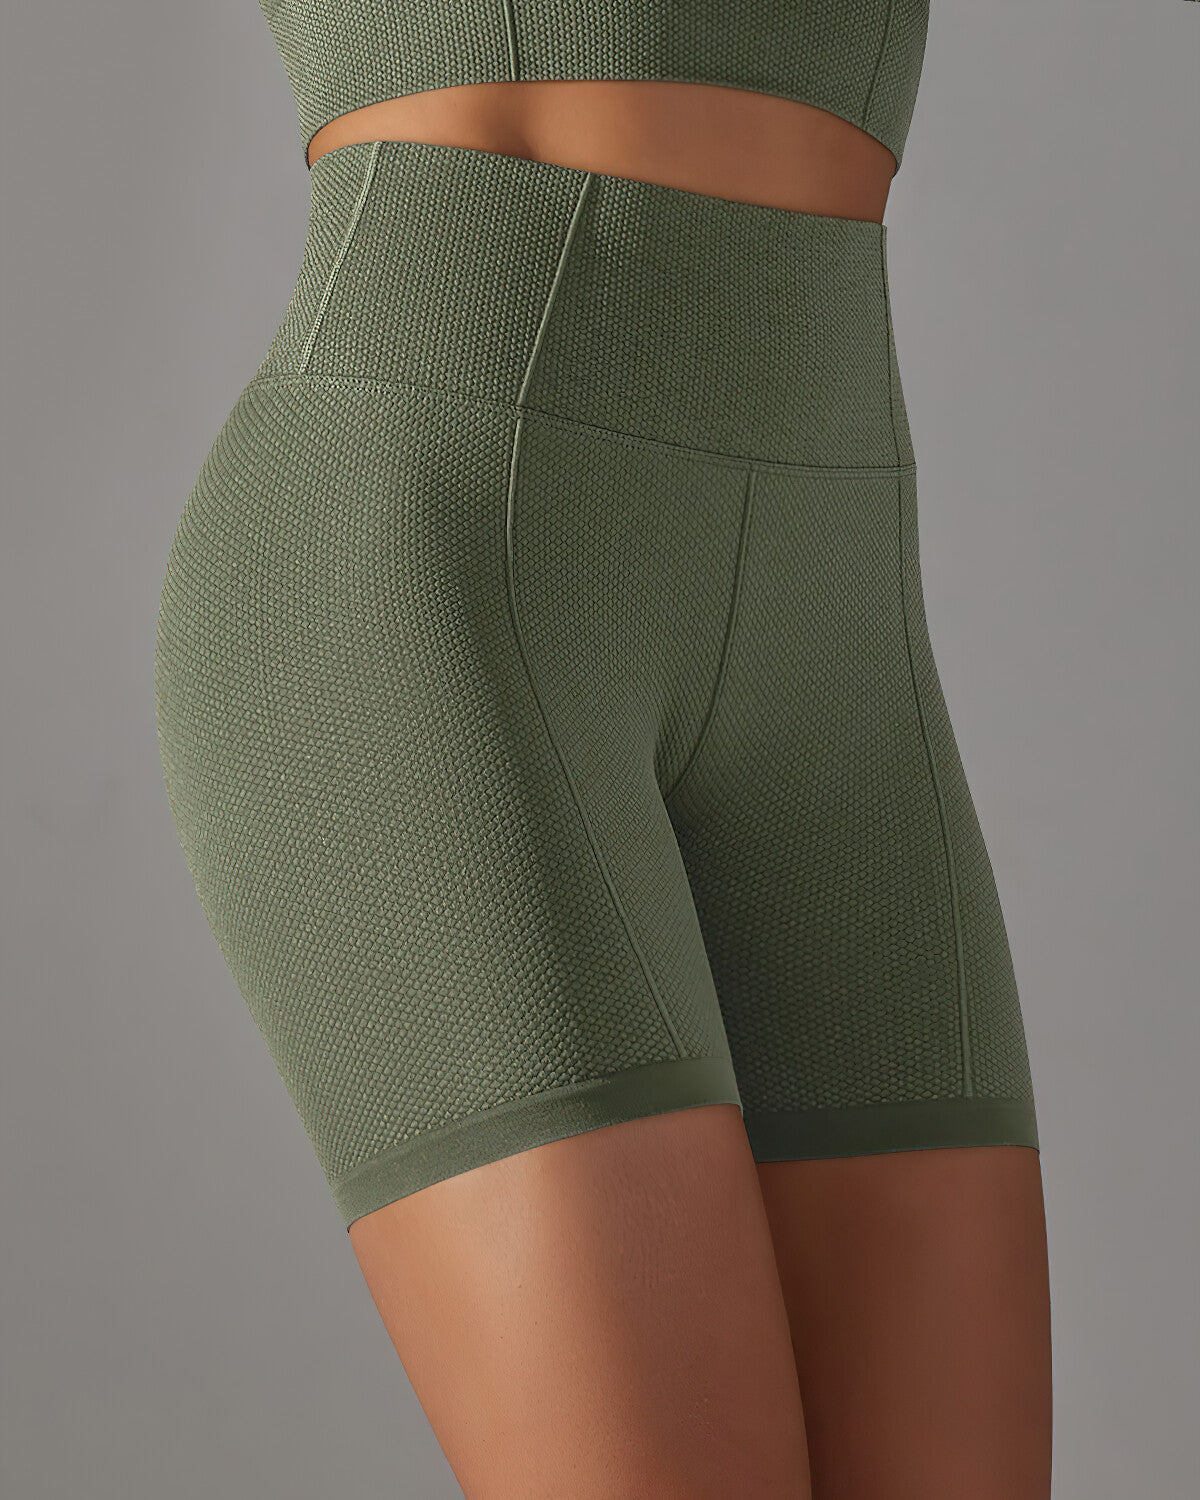 Alodia Shorts - Army Green